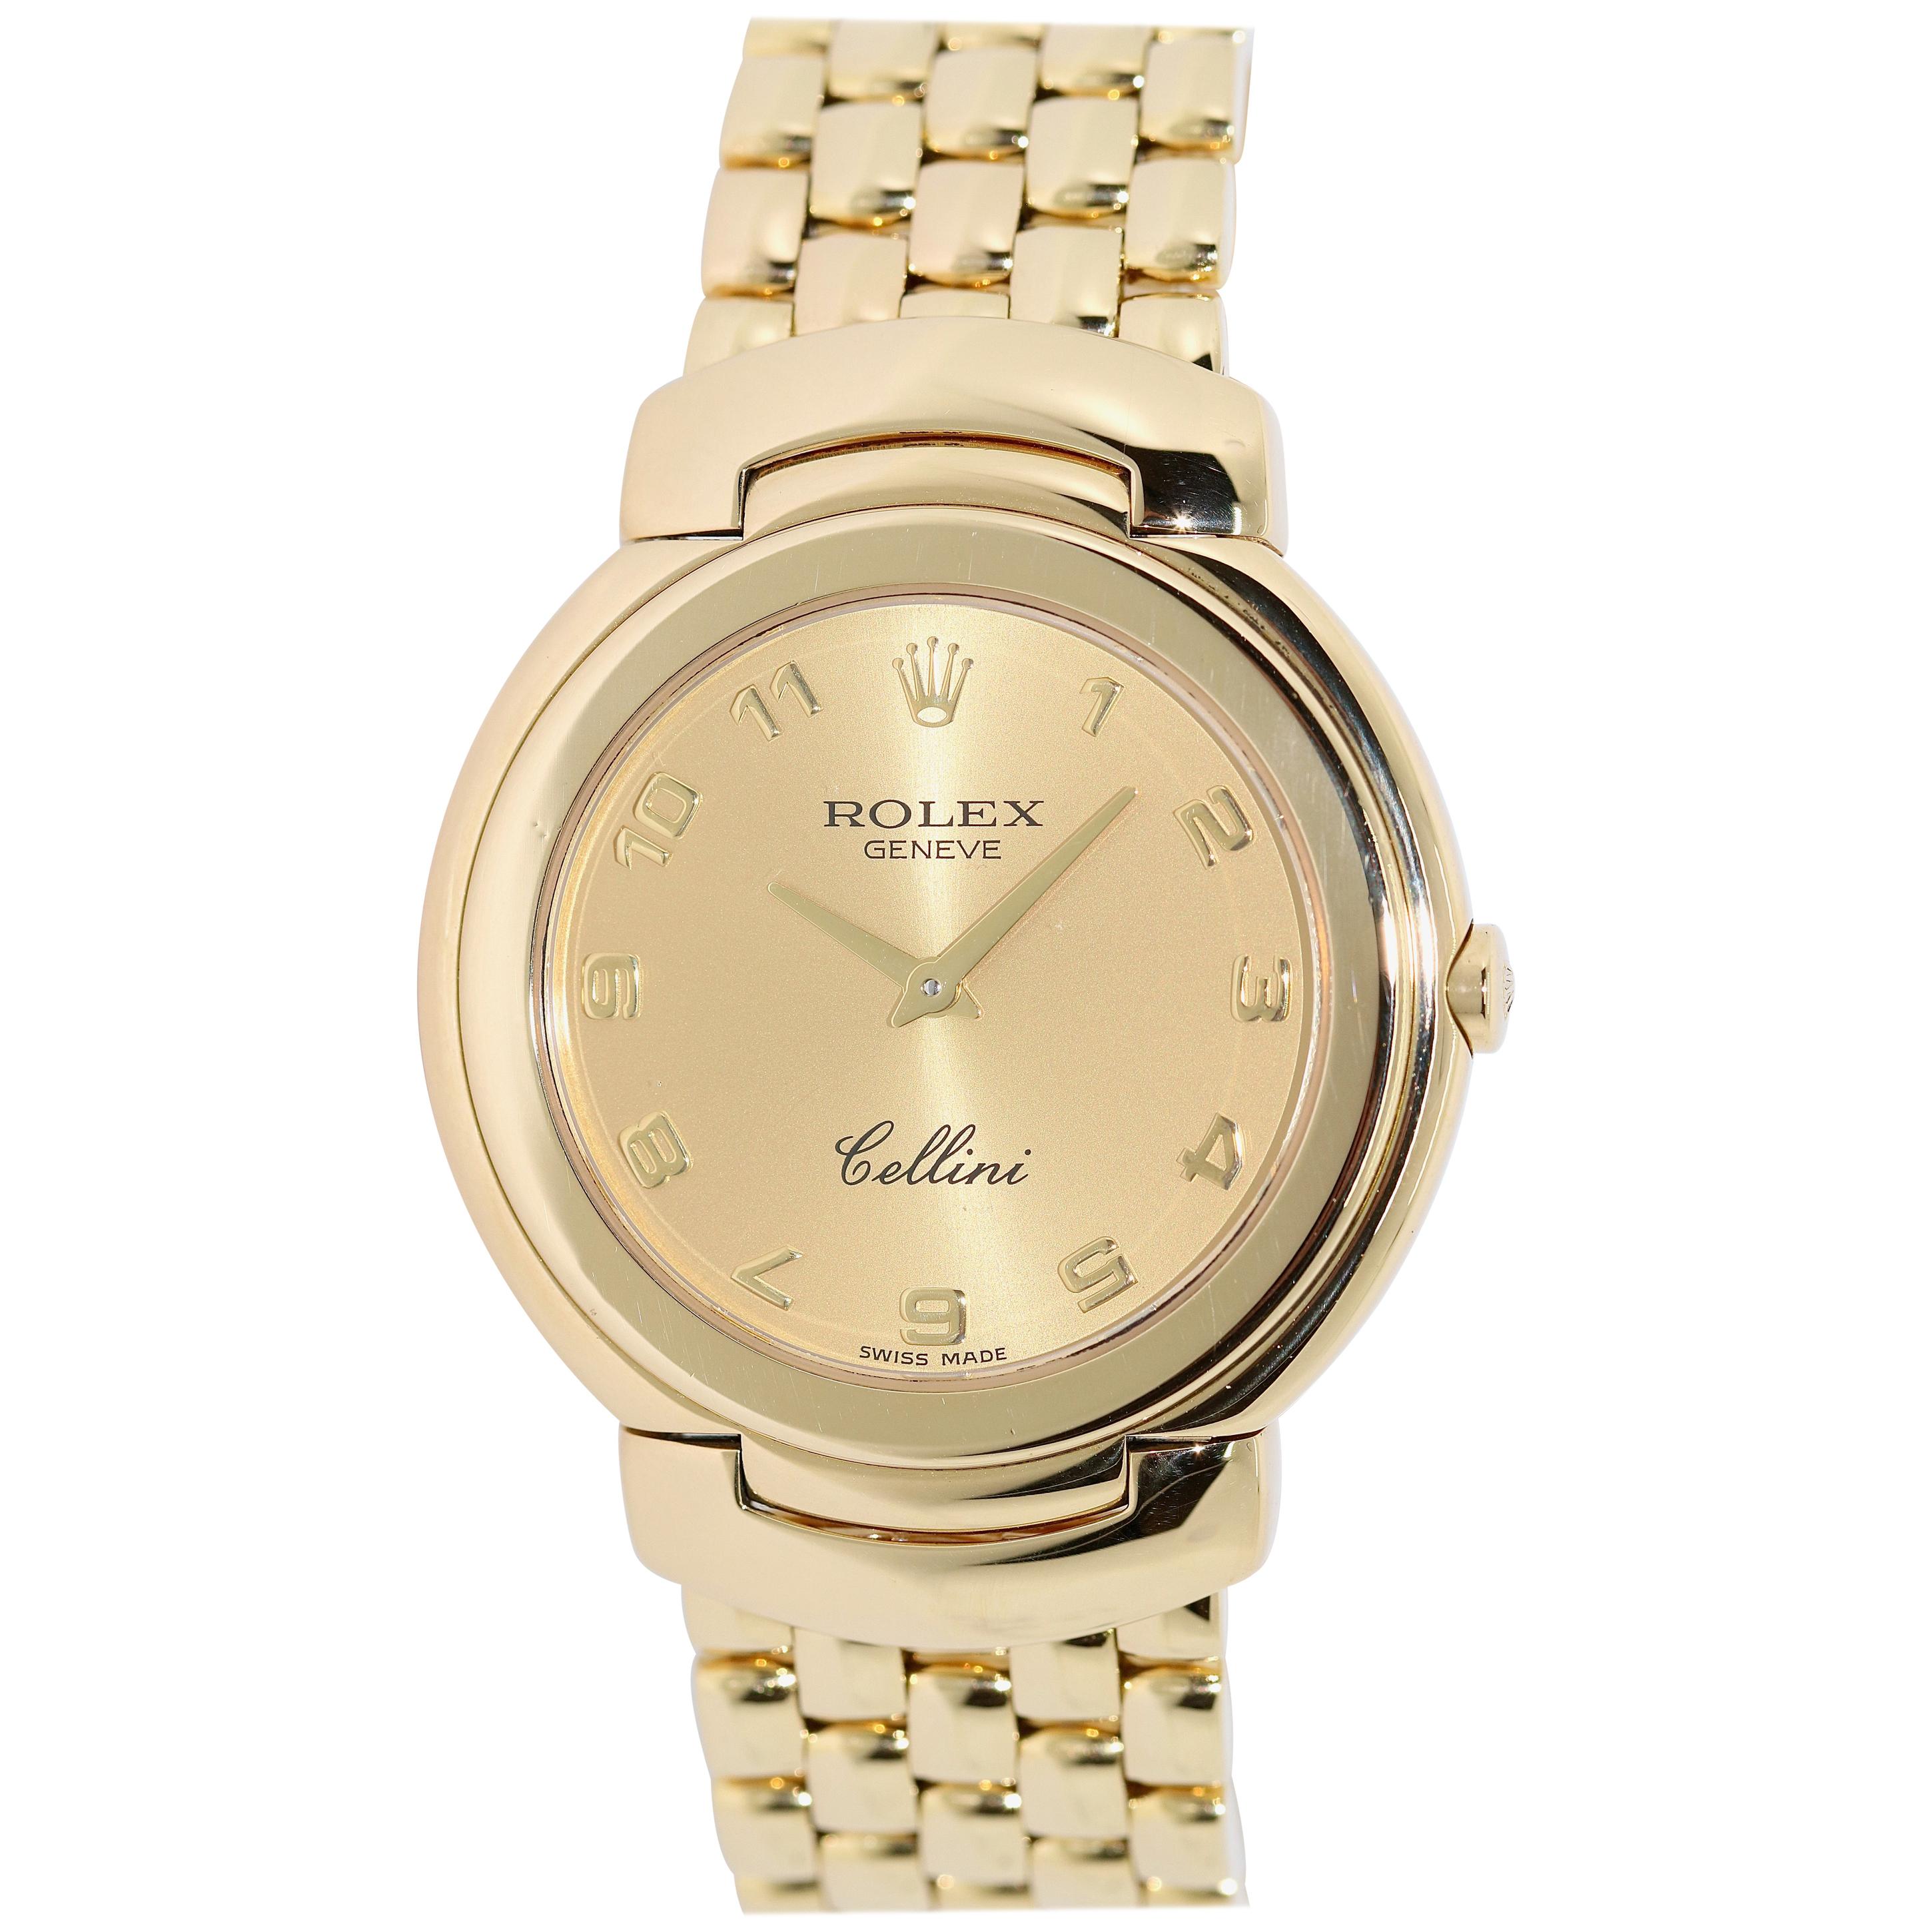 Rolex Cellini 6622 Lady 18 Karat Yellow Gold, Quartz, Wristwatch